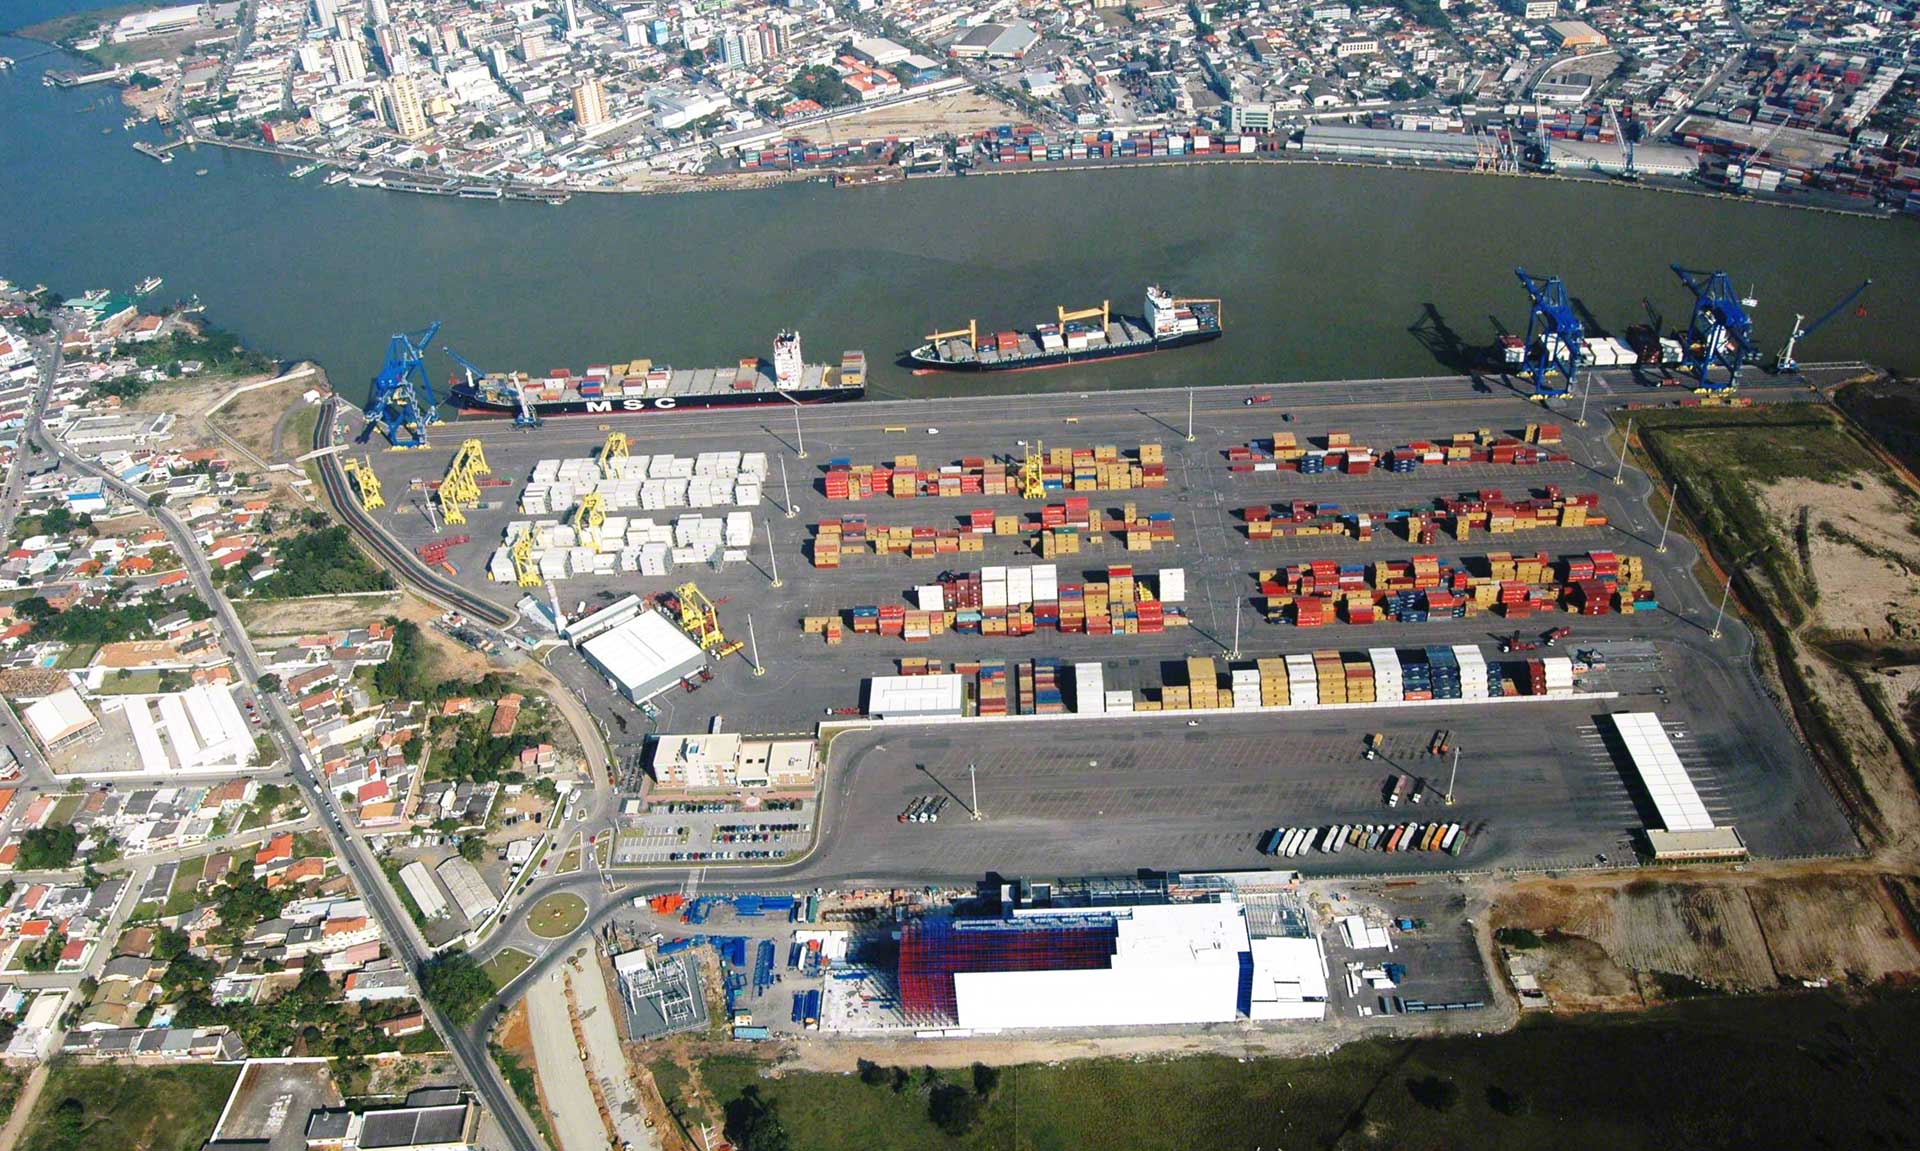 Depósito aduanero: un aliado para gestionar importaciones y exportaciones